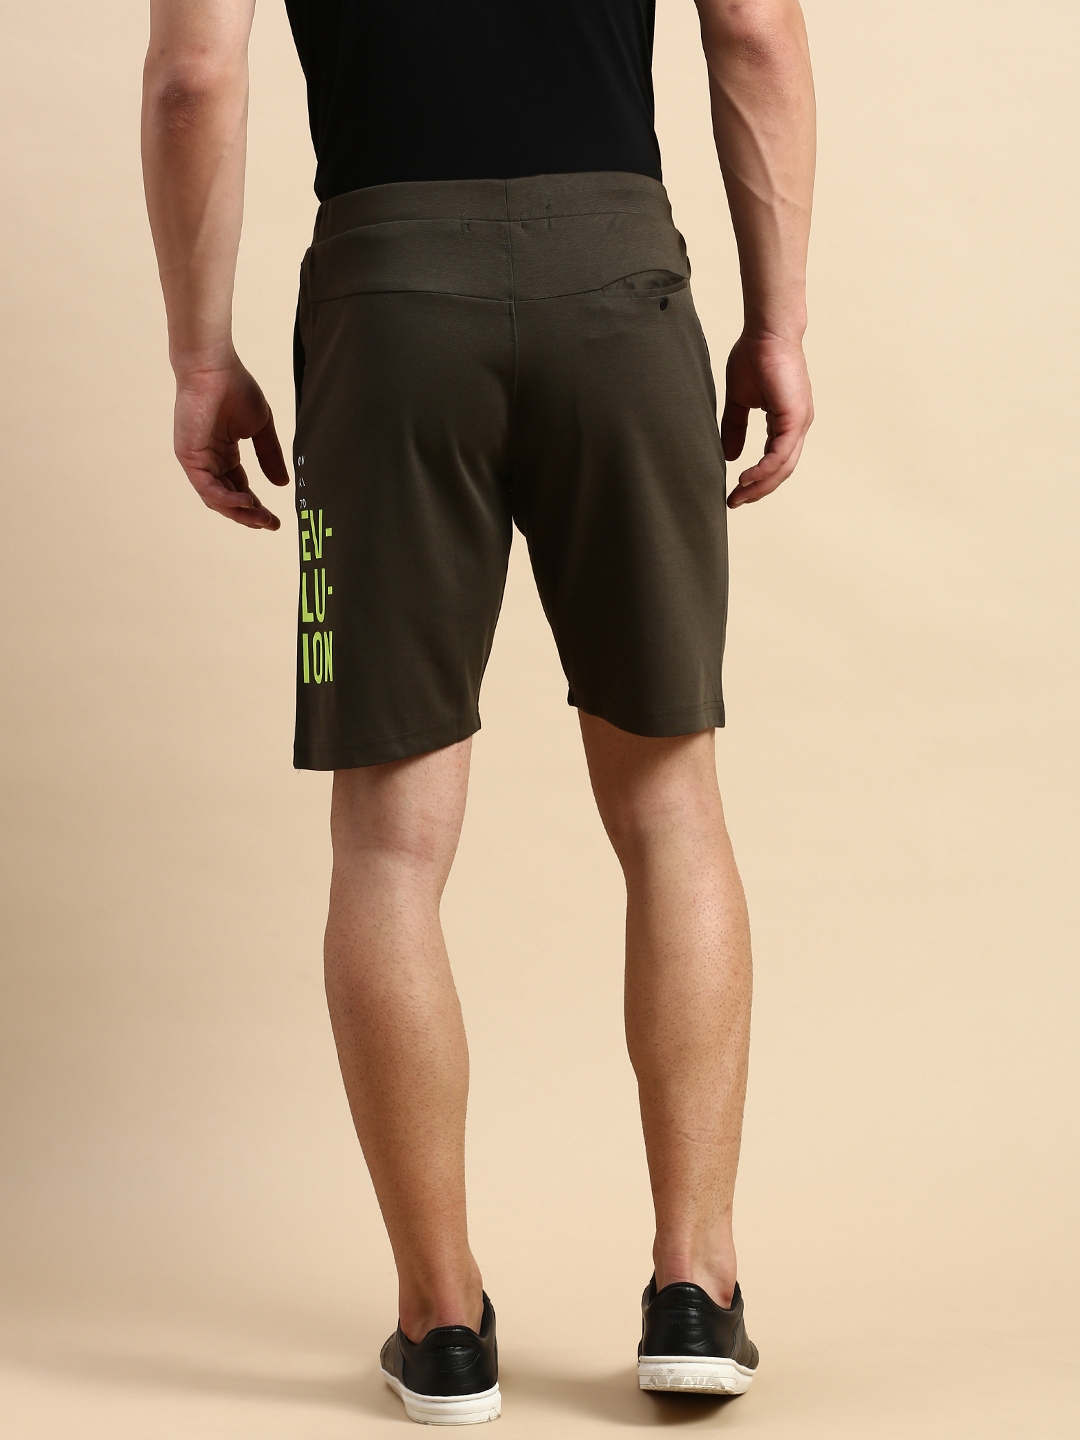 Showoff | SHOWOFF Men's Solid Olive Knee Length Regular Shorts 2